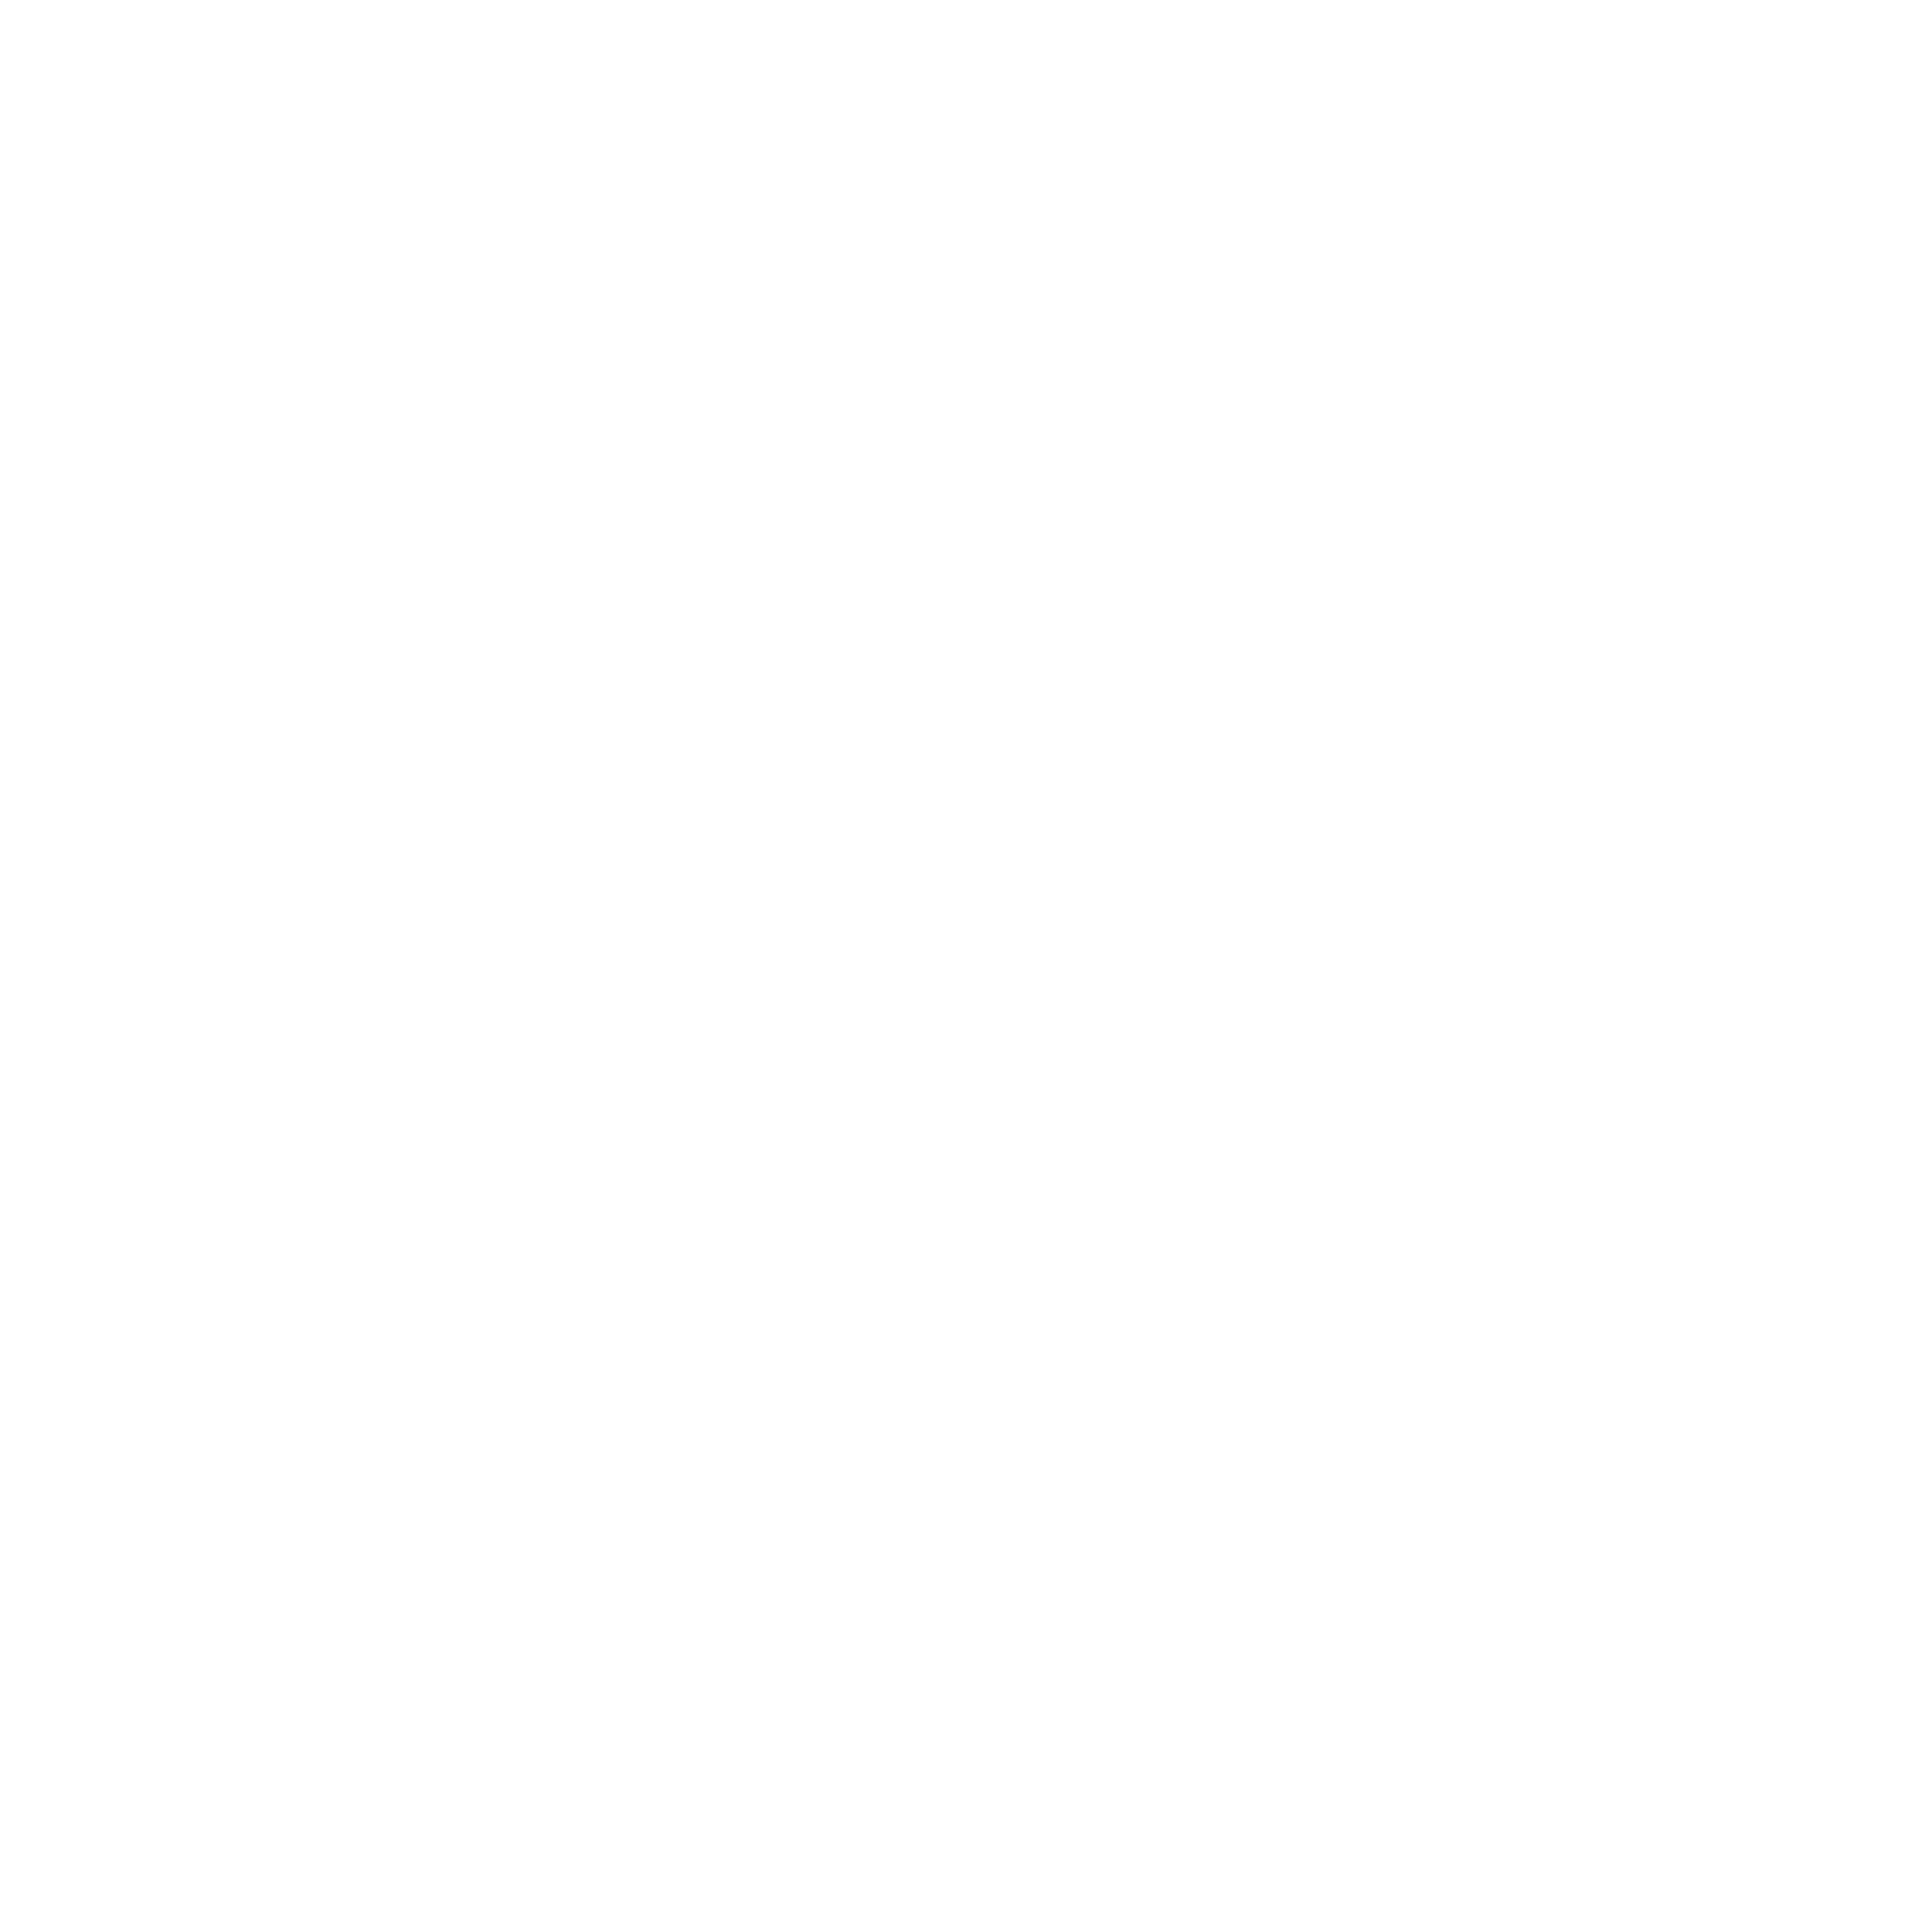 Teatro RioMar Fortaleza